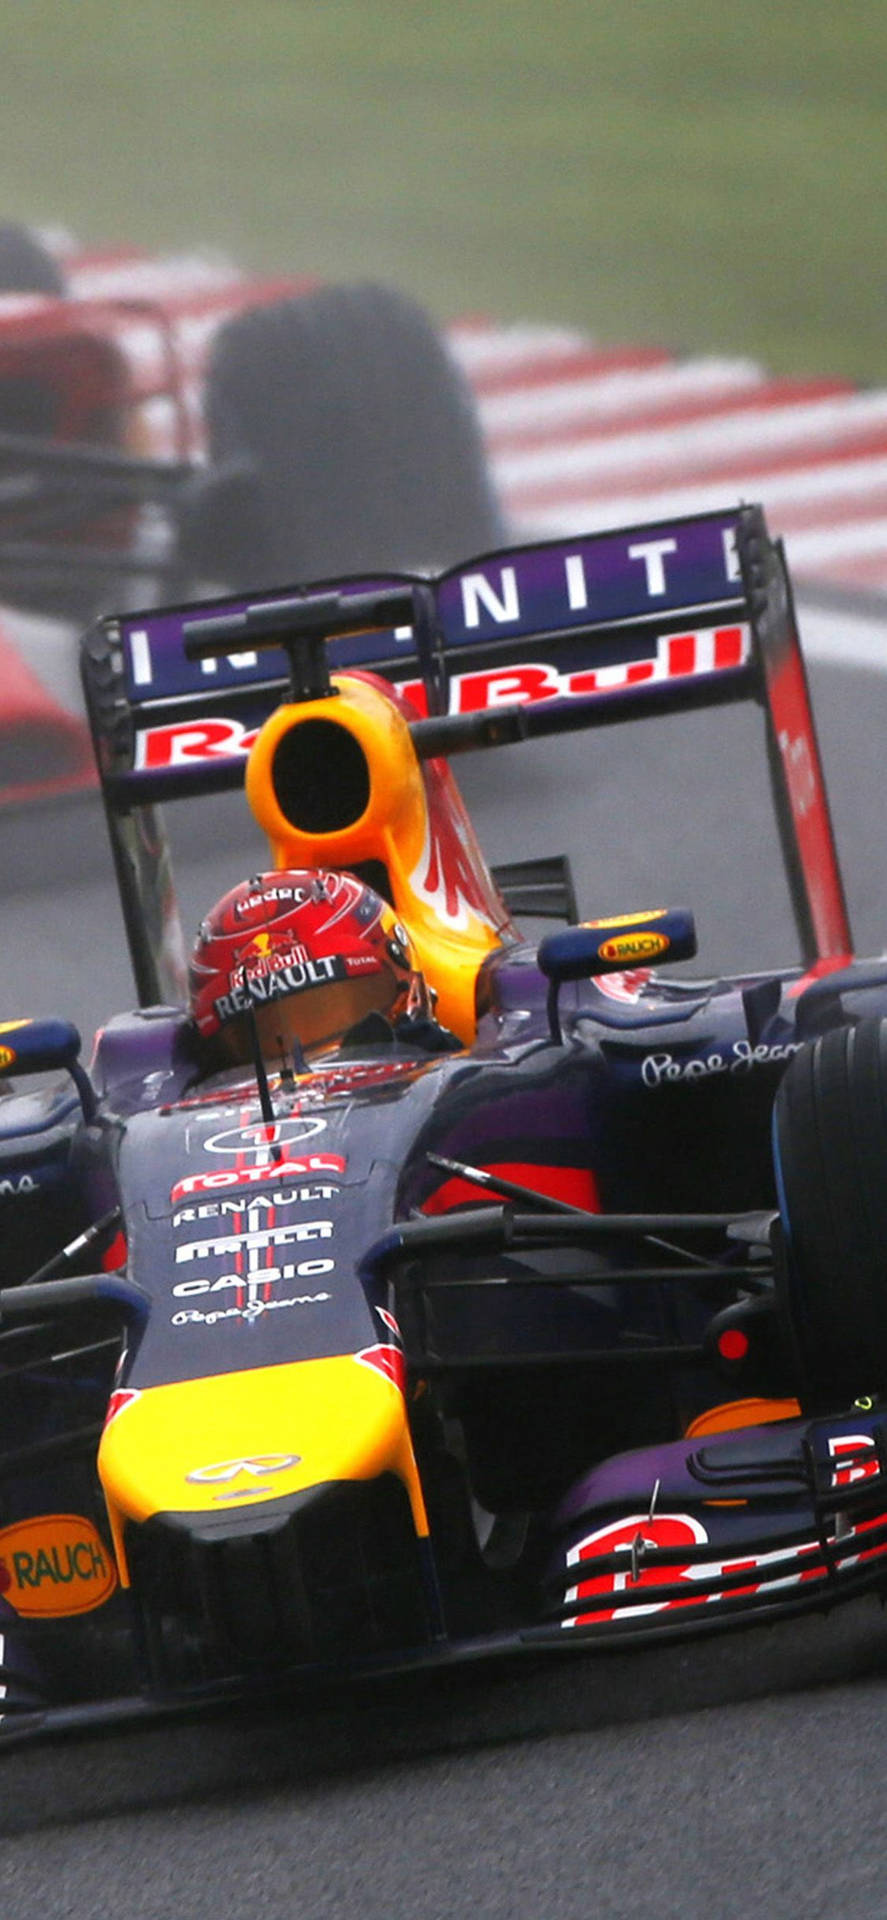 Fondode Pantalla De F1 Daniel Ricciardo Racing Para Iphone. Fondo de pantalla